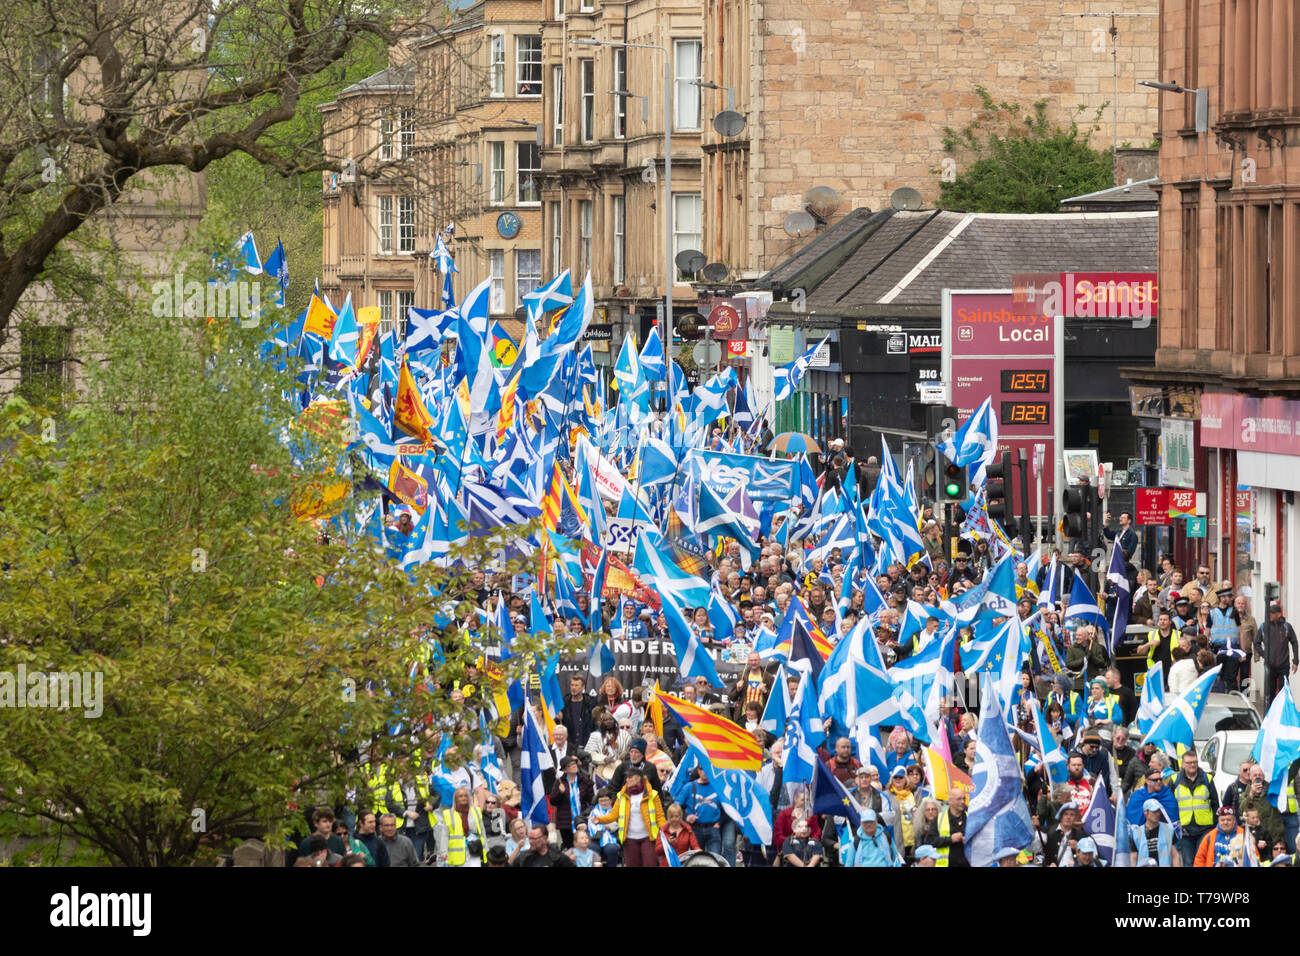 Glasgow Scottish Independence march, 4 May 2019, Scotland, UK Stock Photo